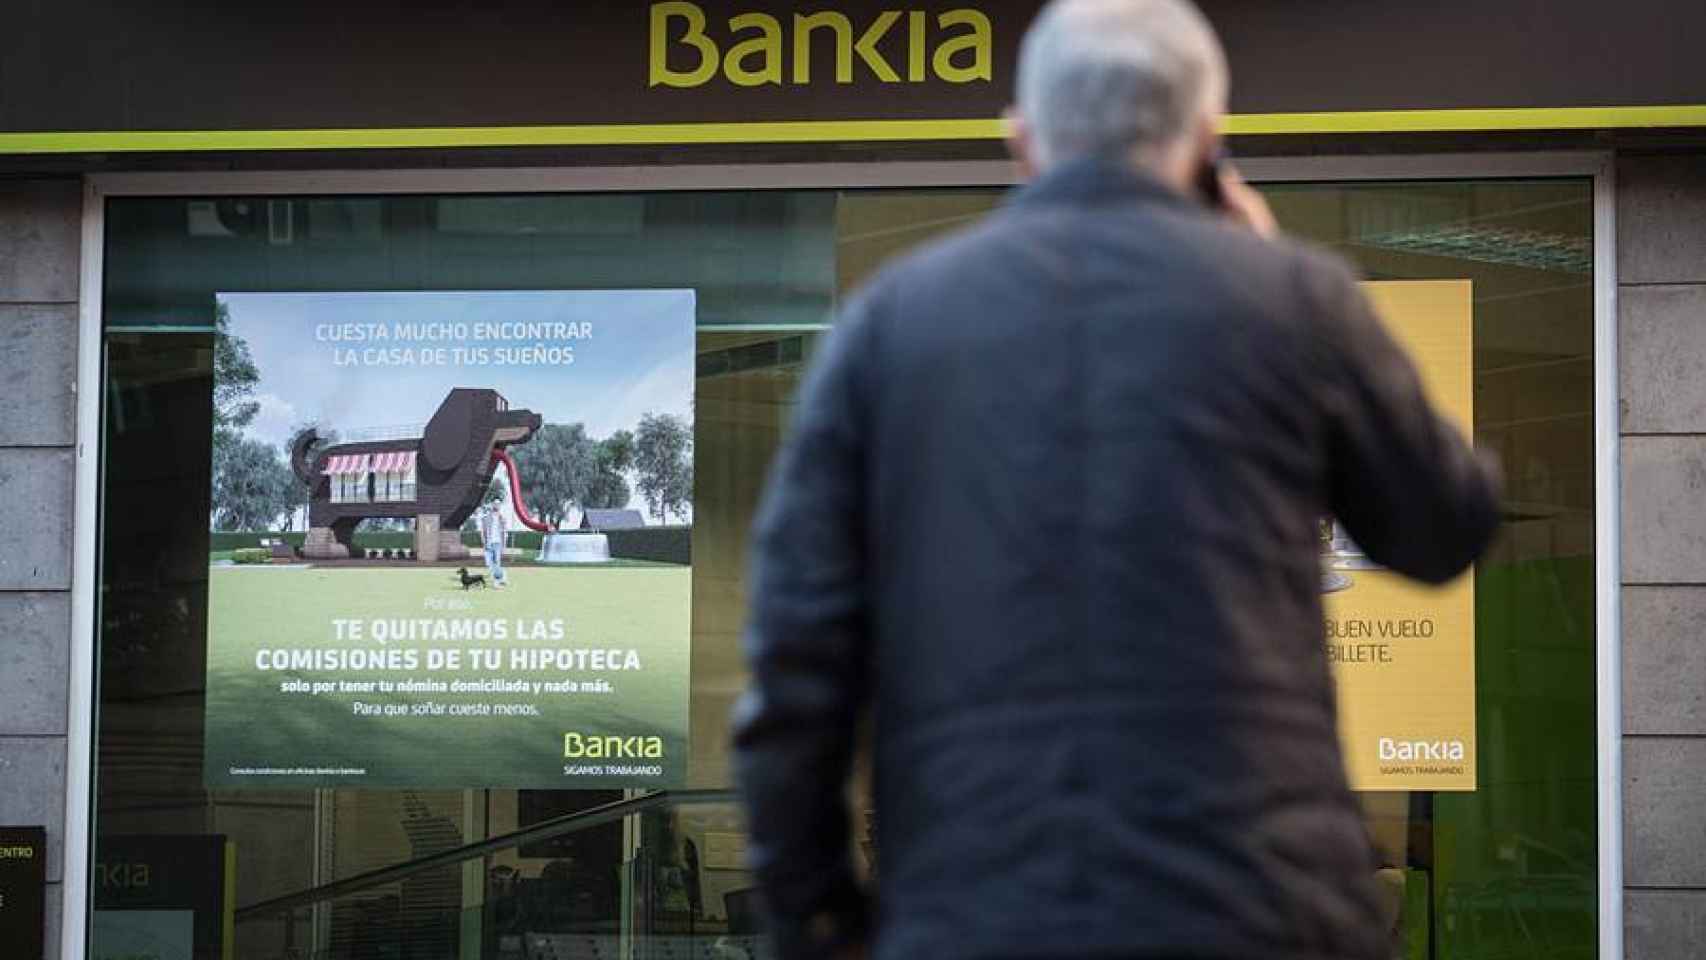 Con Bankia Fácil podrás sacar del cajero con el móvil fácilmente.